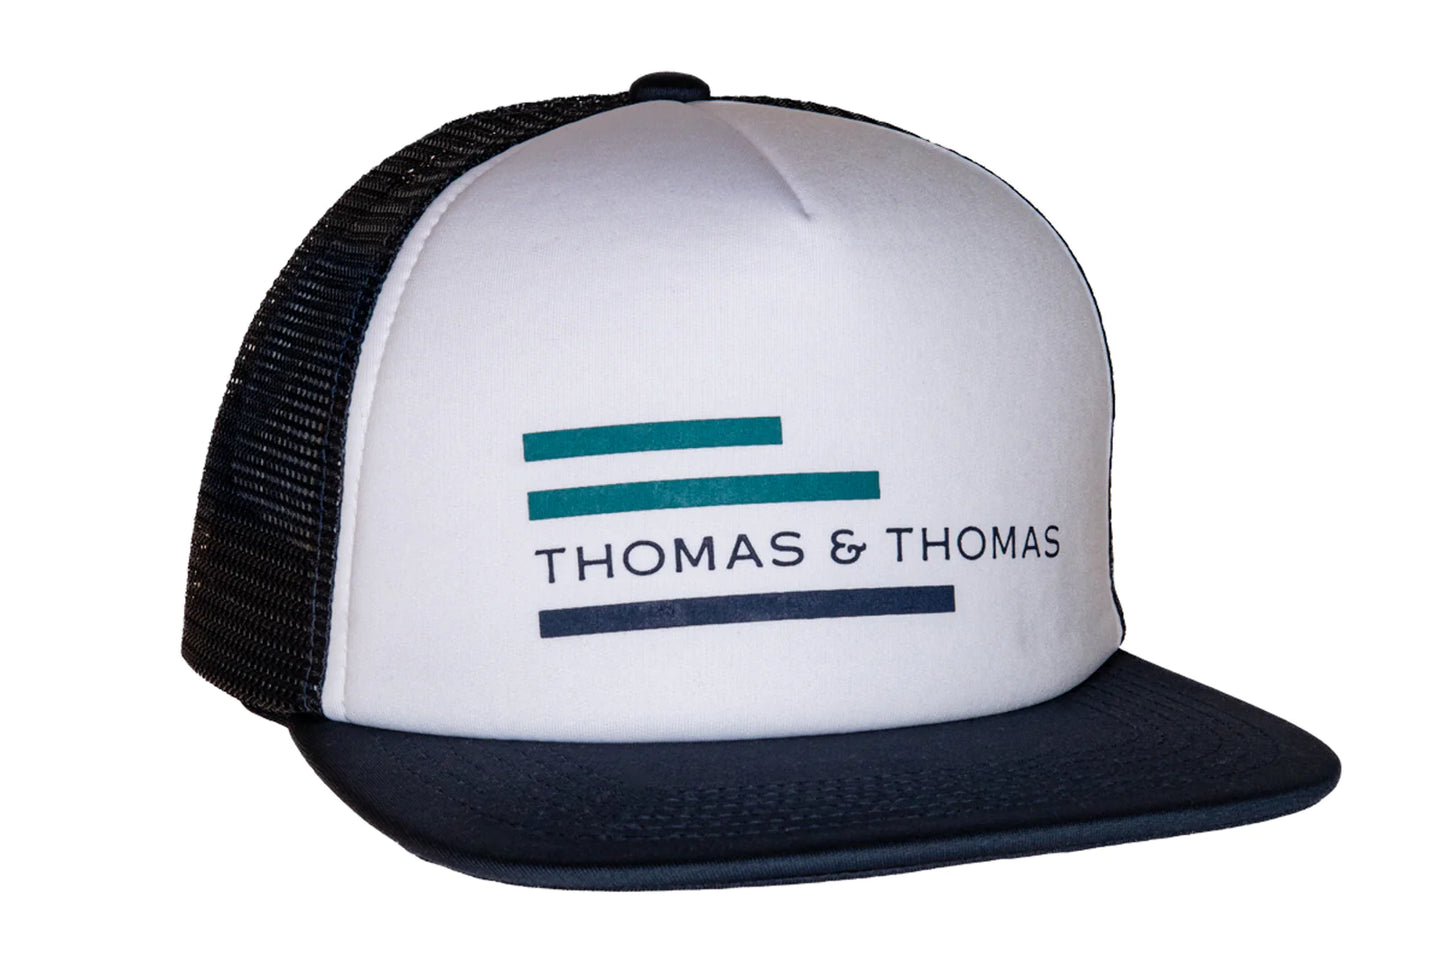 Thomas & Thomas Guide Series Trucker Hat